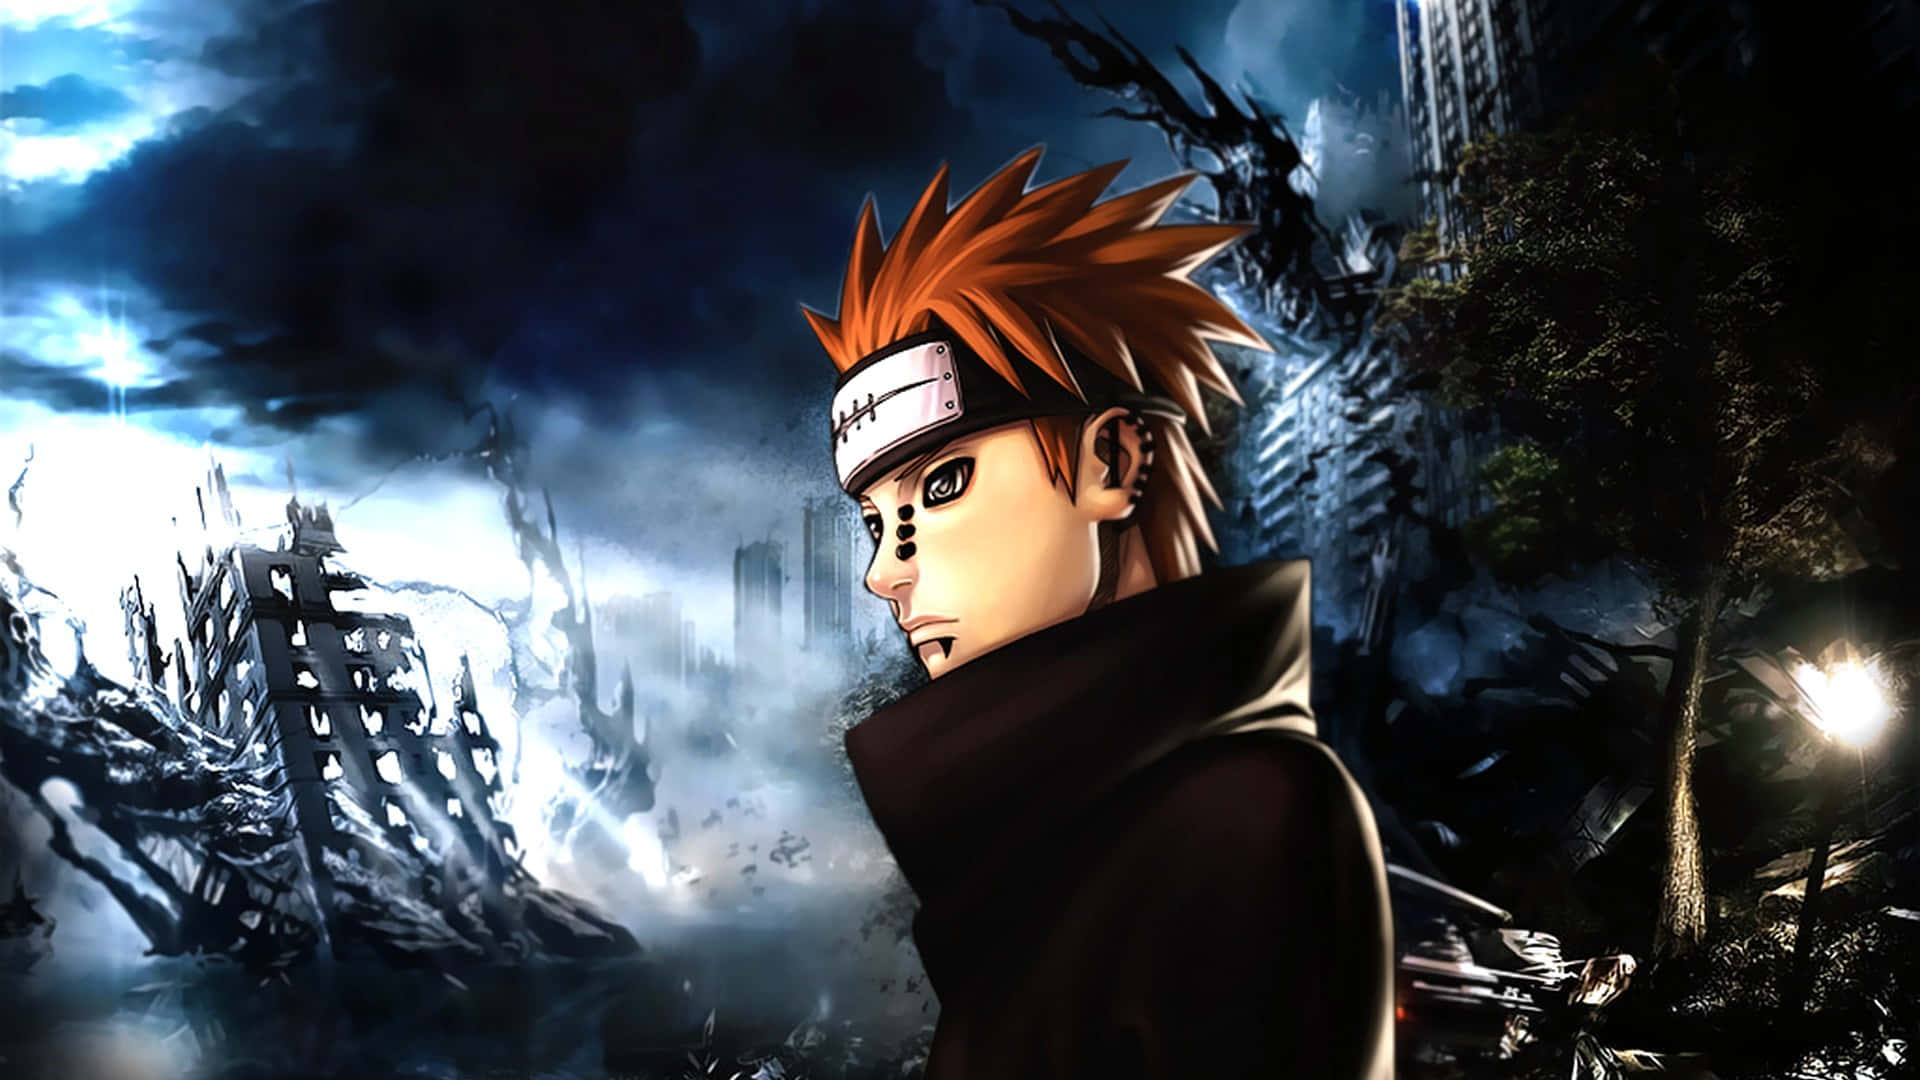 Naruto Uchiha Uses His Sharingan Powers To Protect His Friends. Wallpaper